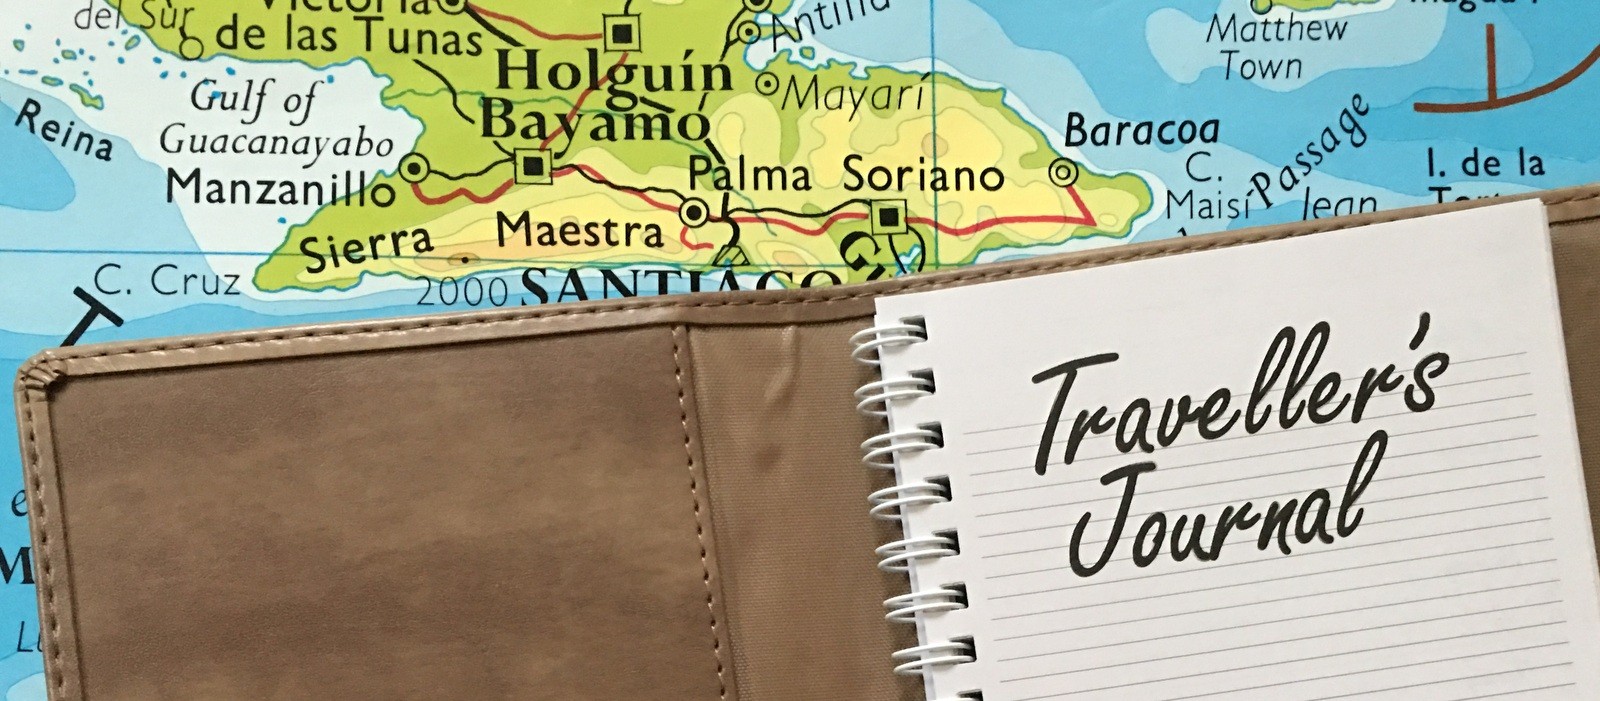 Traveller's Journal Ajasto